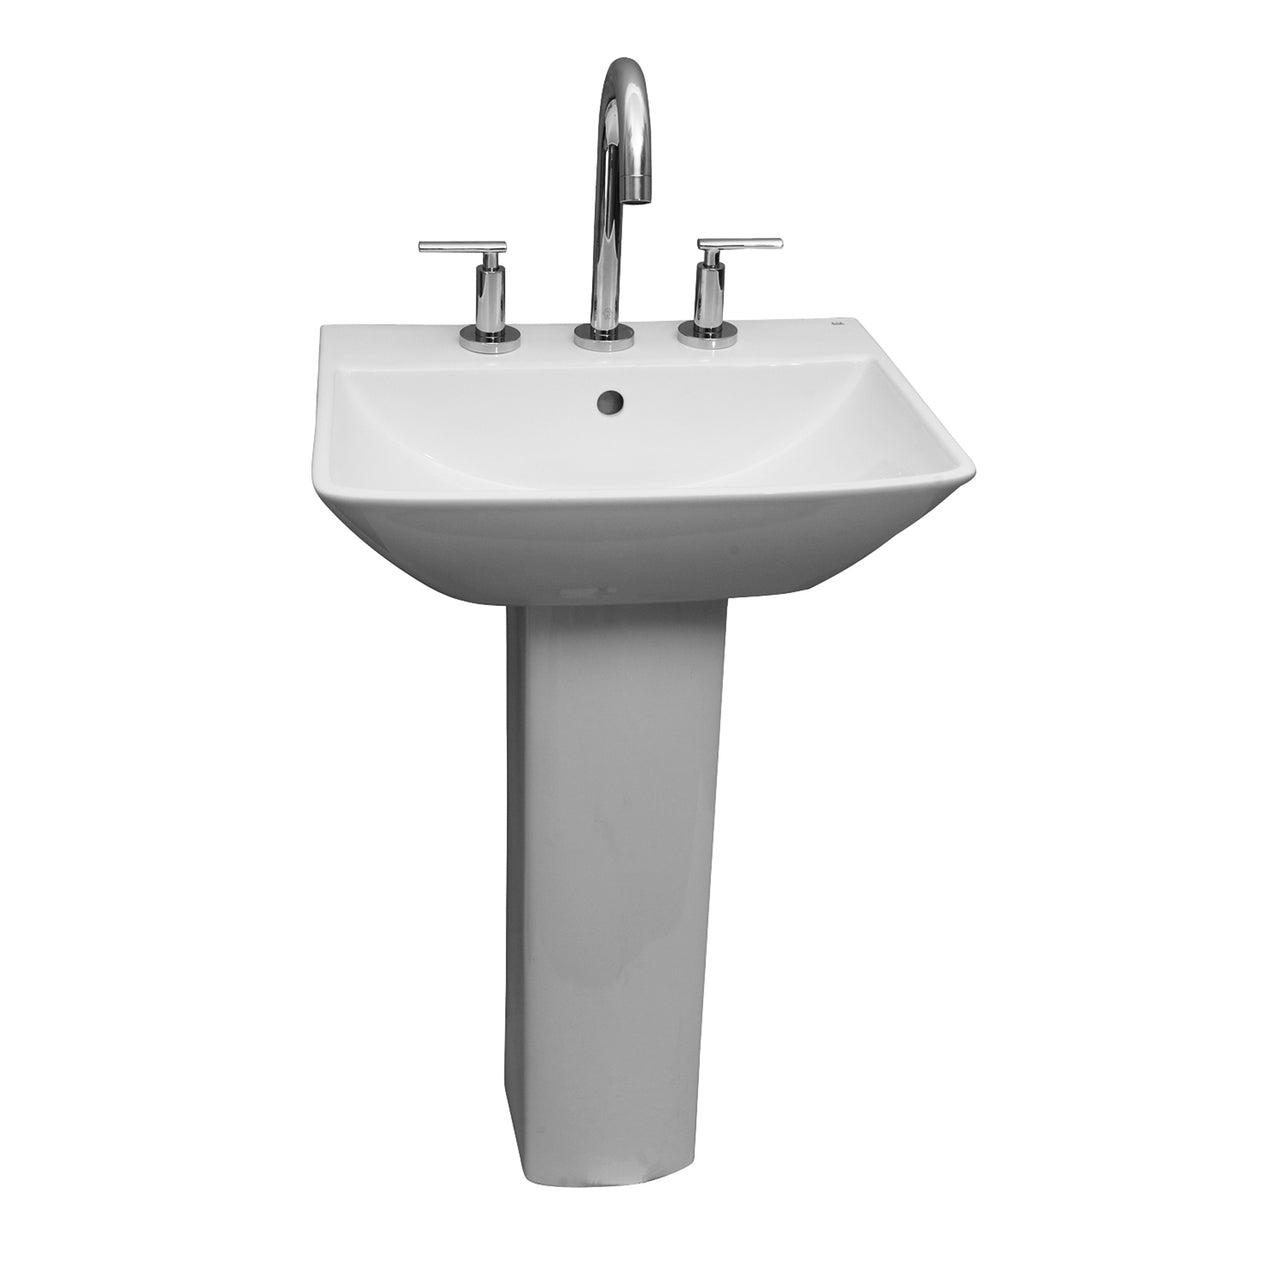 Summit 500 Pedestal Bathroom Sink White for 8" Widespread